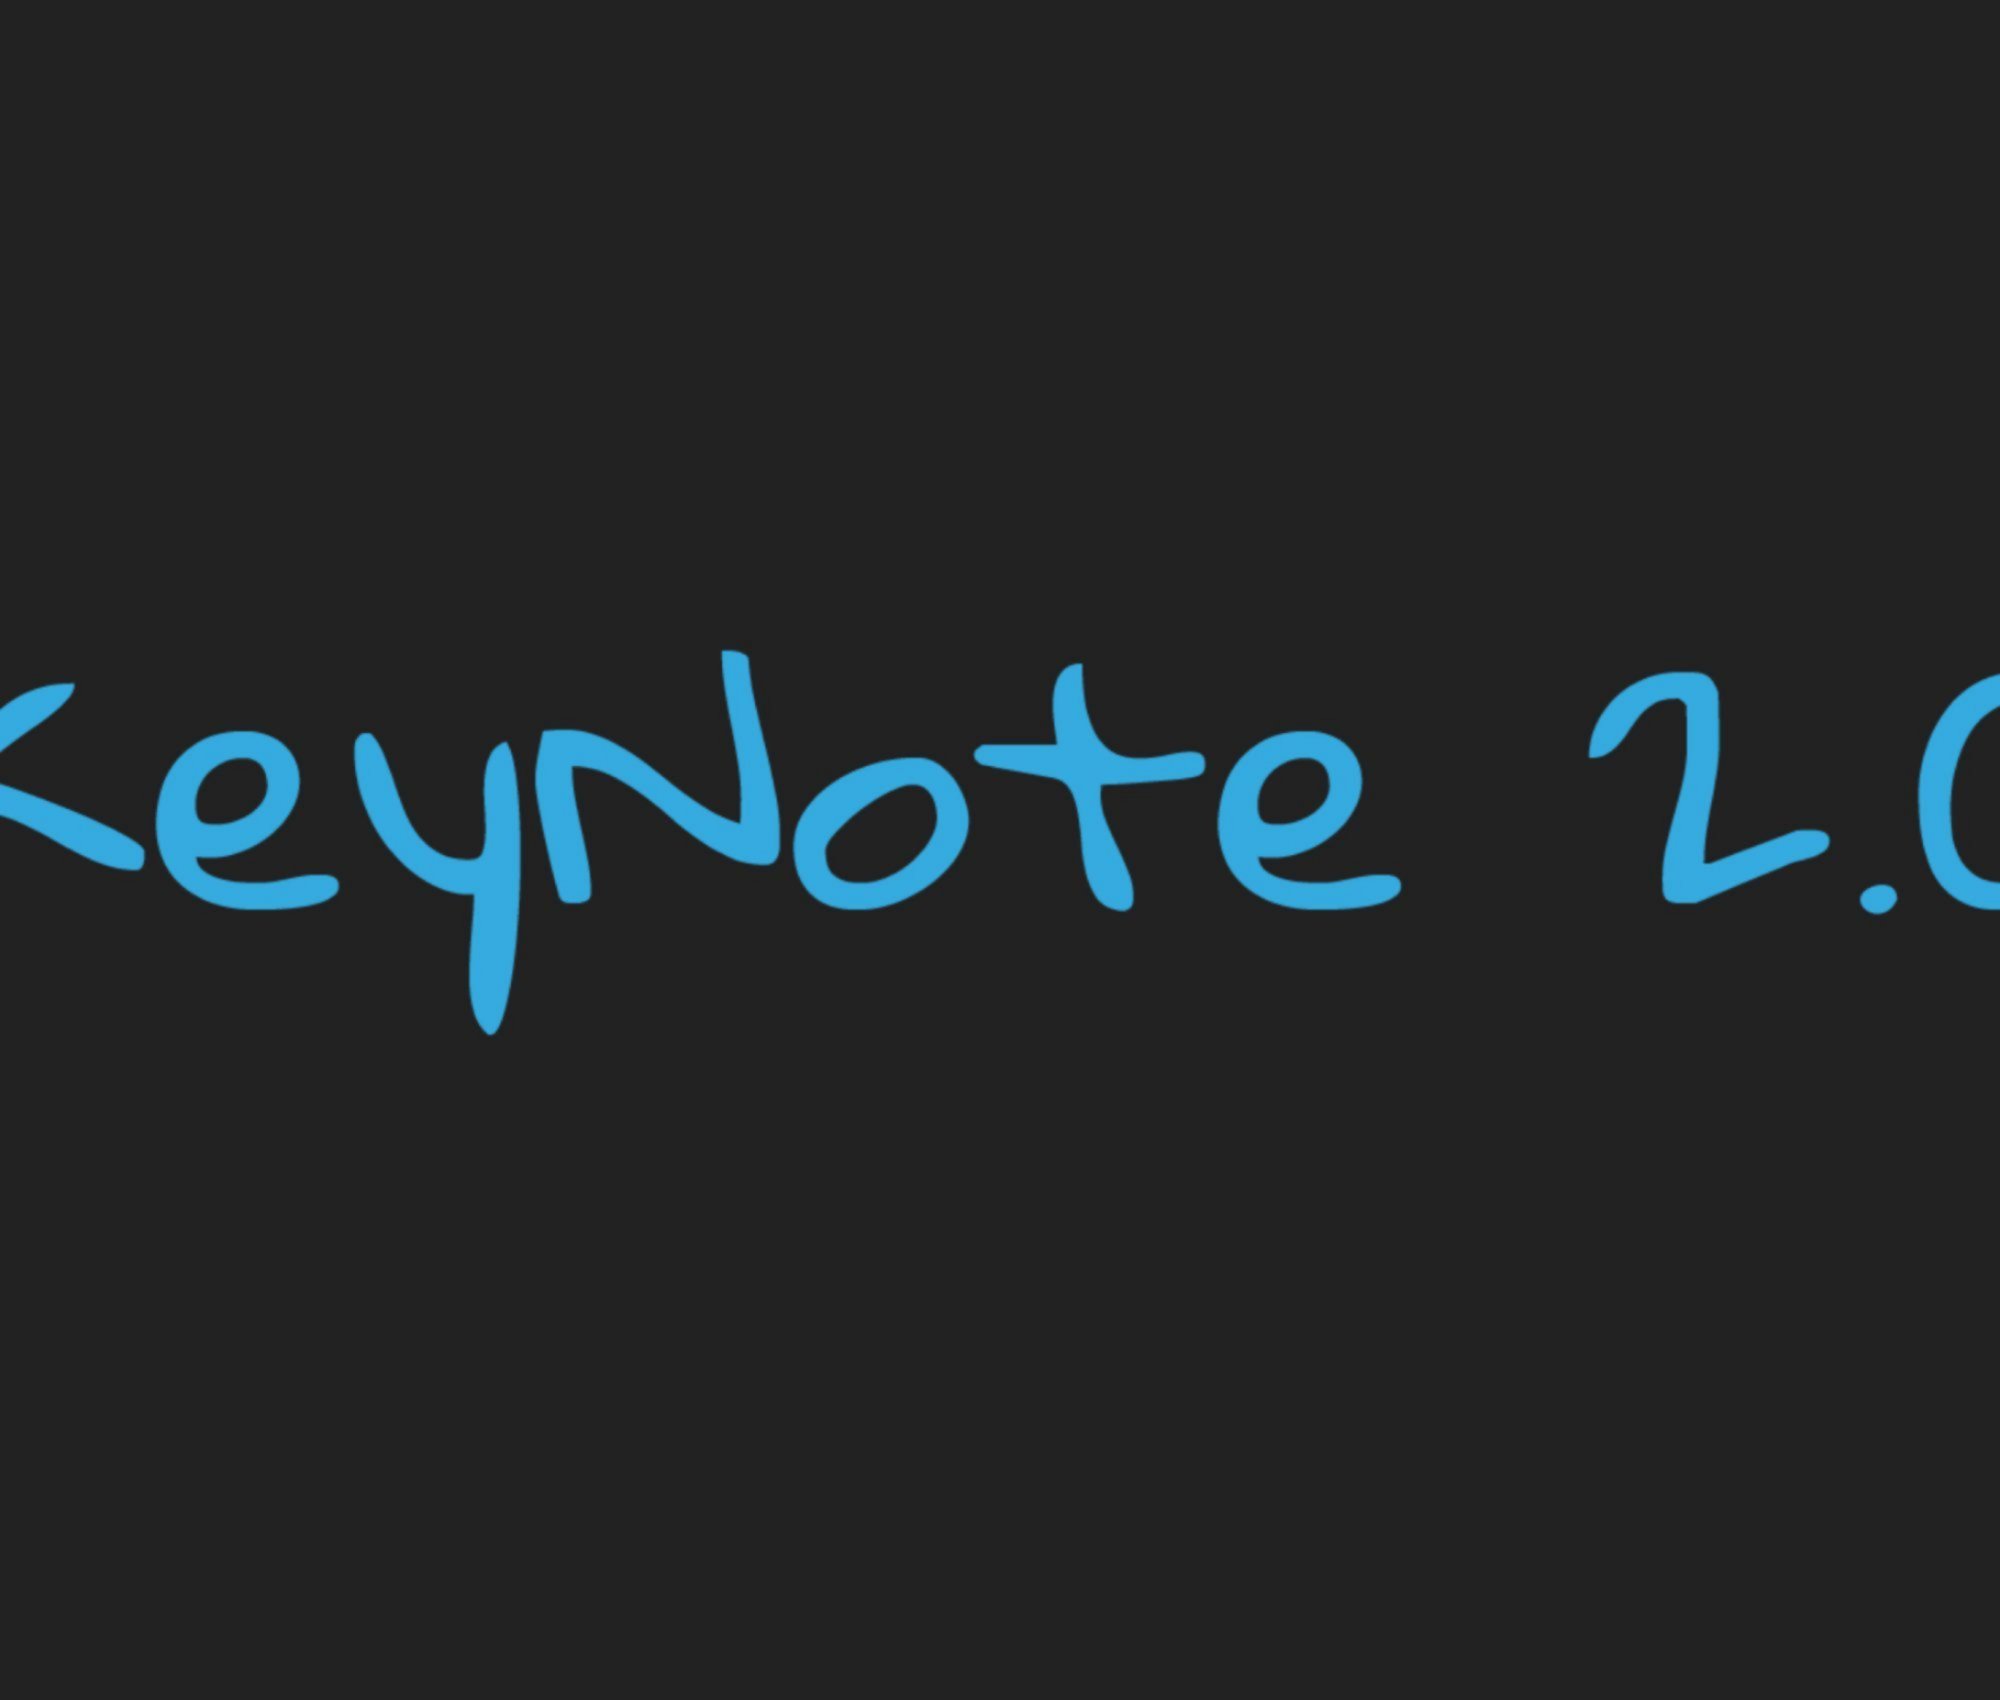 Keynote 2.0